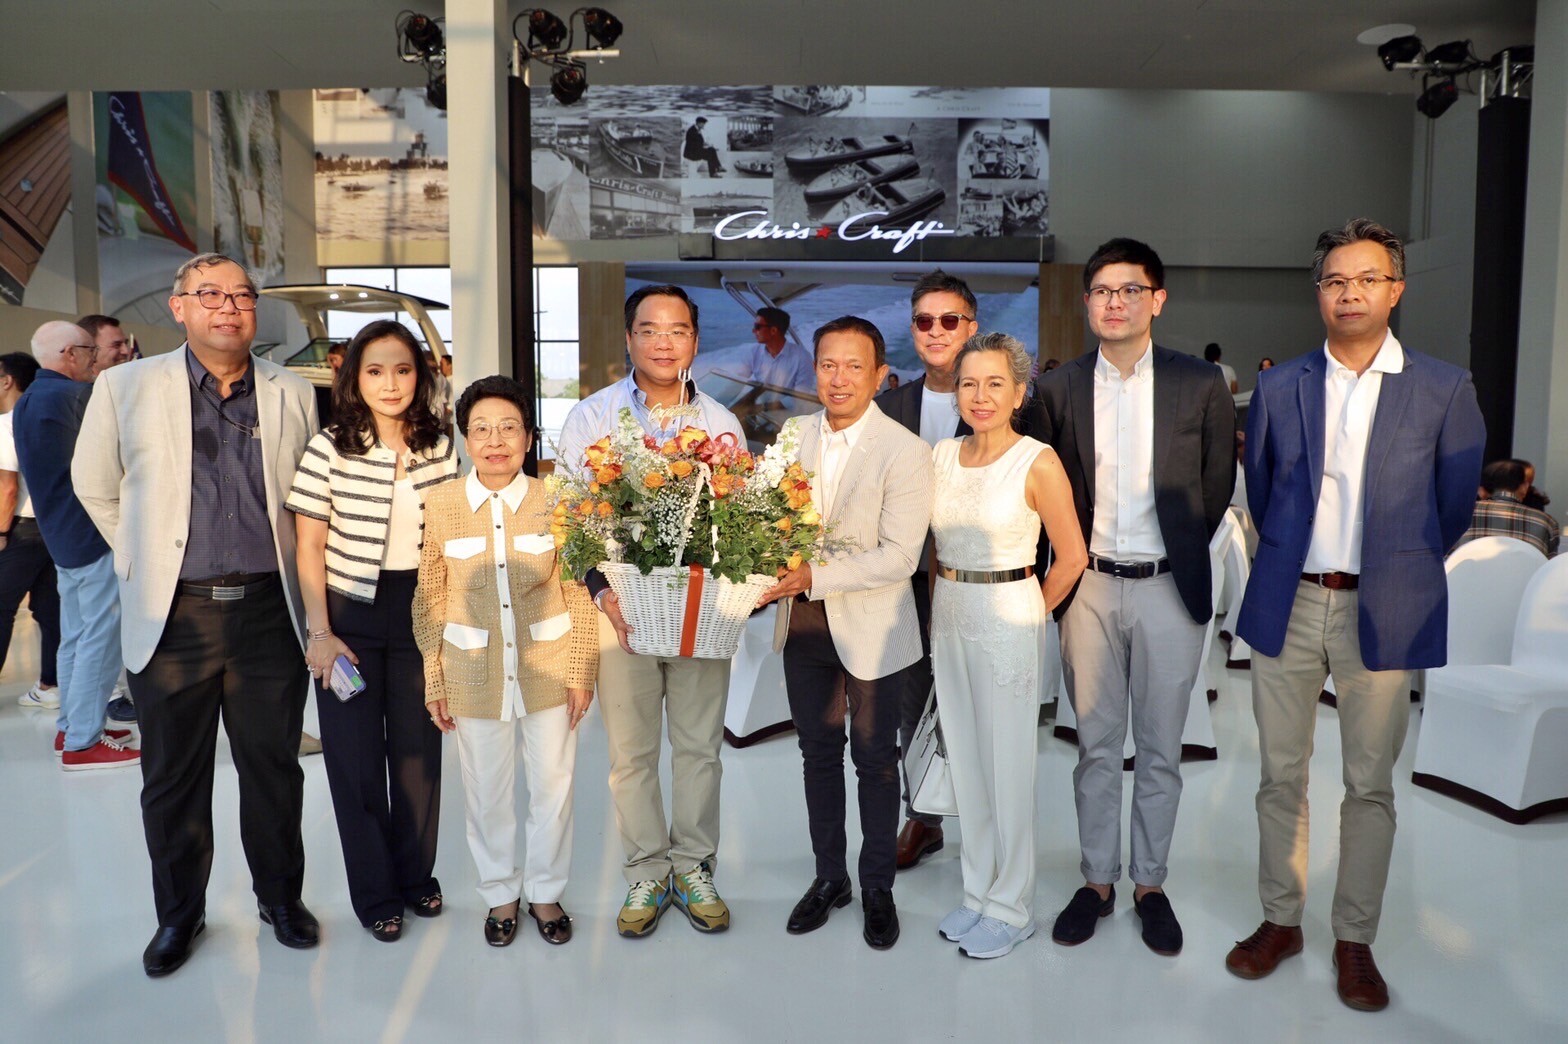 ผู้บริหารเครือเอ็ม บี เค ร่วมแสดงความยินดี เปิดตัวแบรนด์ คริส-คราฟท์ และโชว์รูม คริส-คราฟท์ ประเทศไทย ณ ริเวอร์เดล มารีน่า